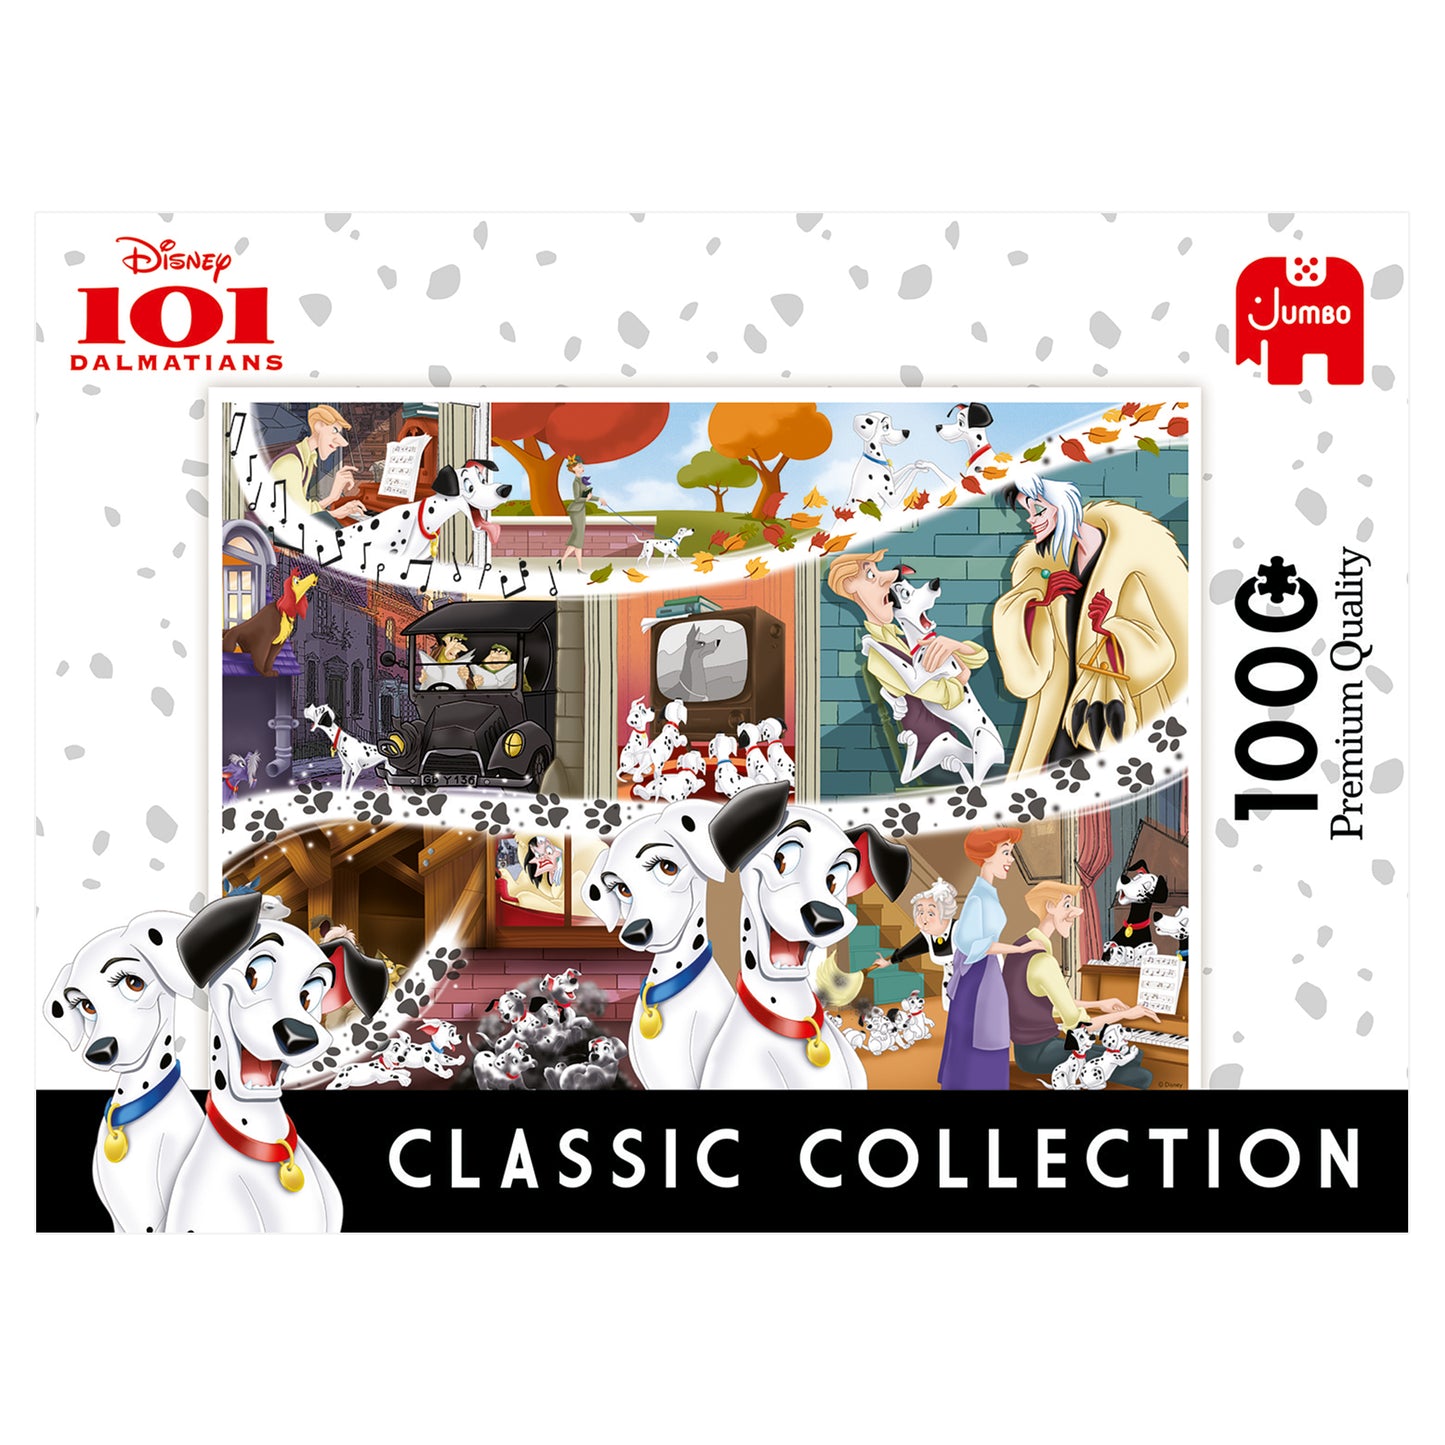 **Disney Classic Collection 101 Dalmatians 1000pcs - product image - Jumboplay.com